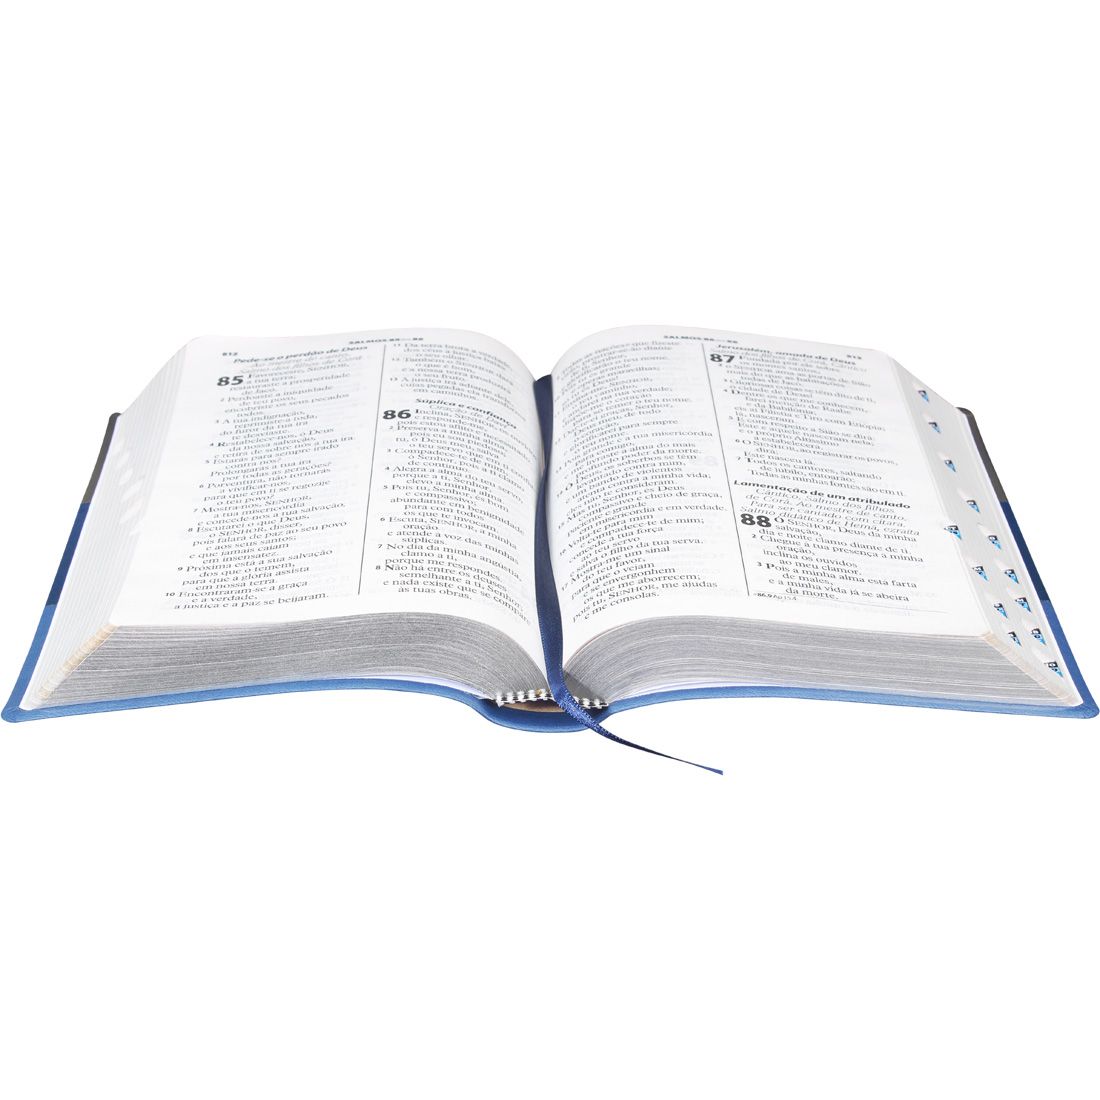 Bíblia Sagrada Letra Gigante com índice  Almeida Revista e atualizada tricolor.